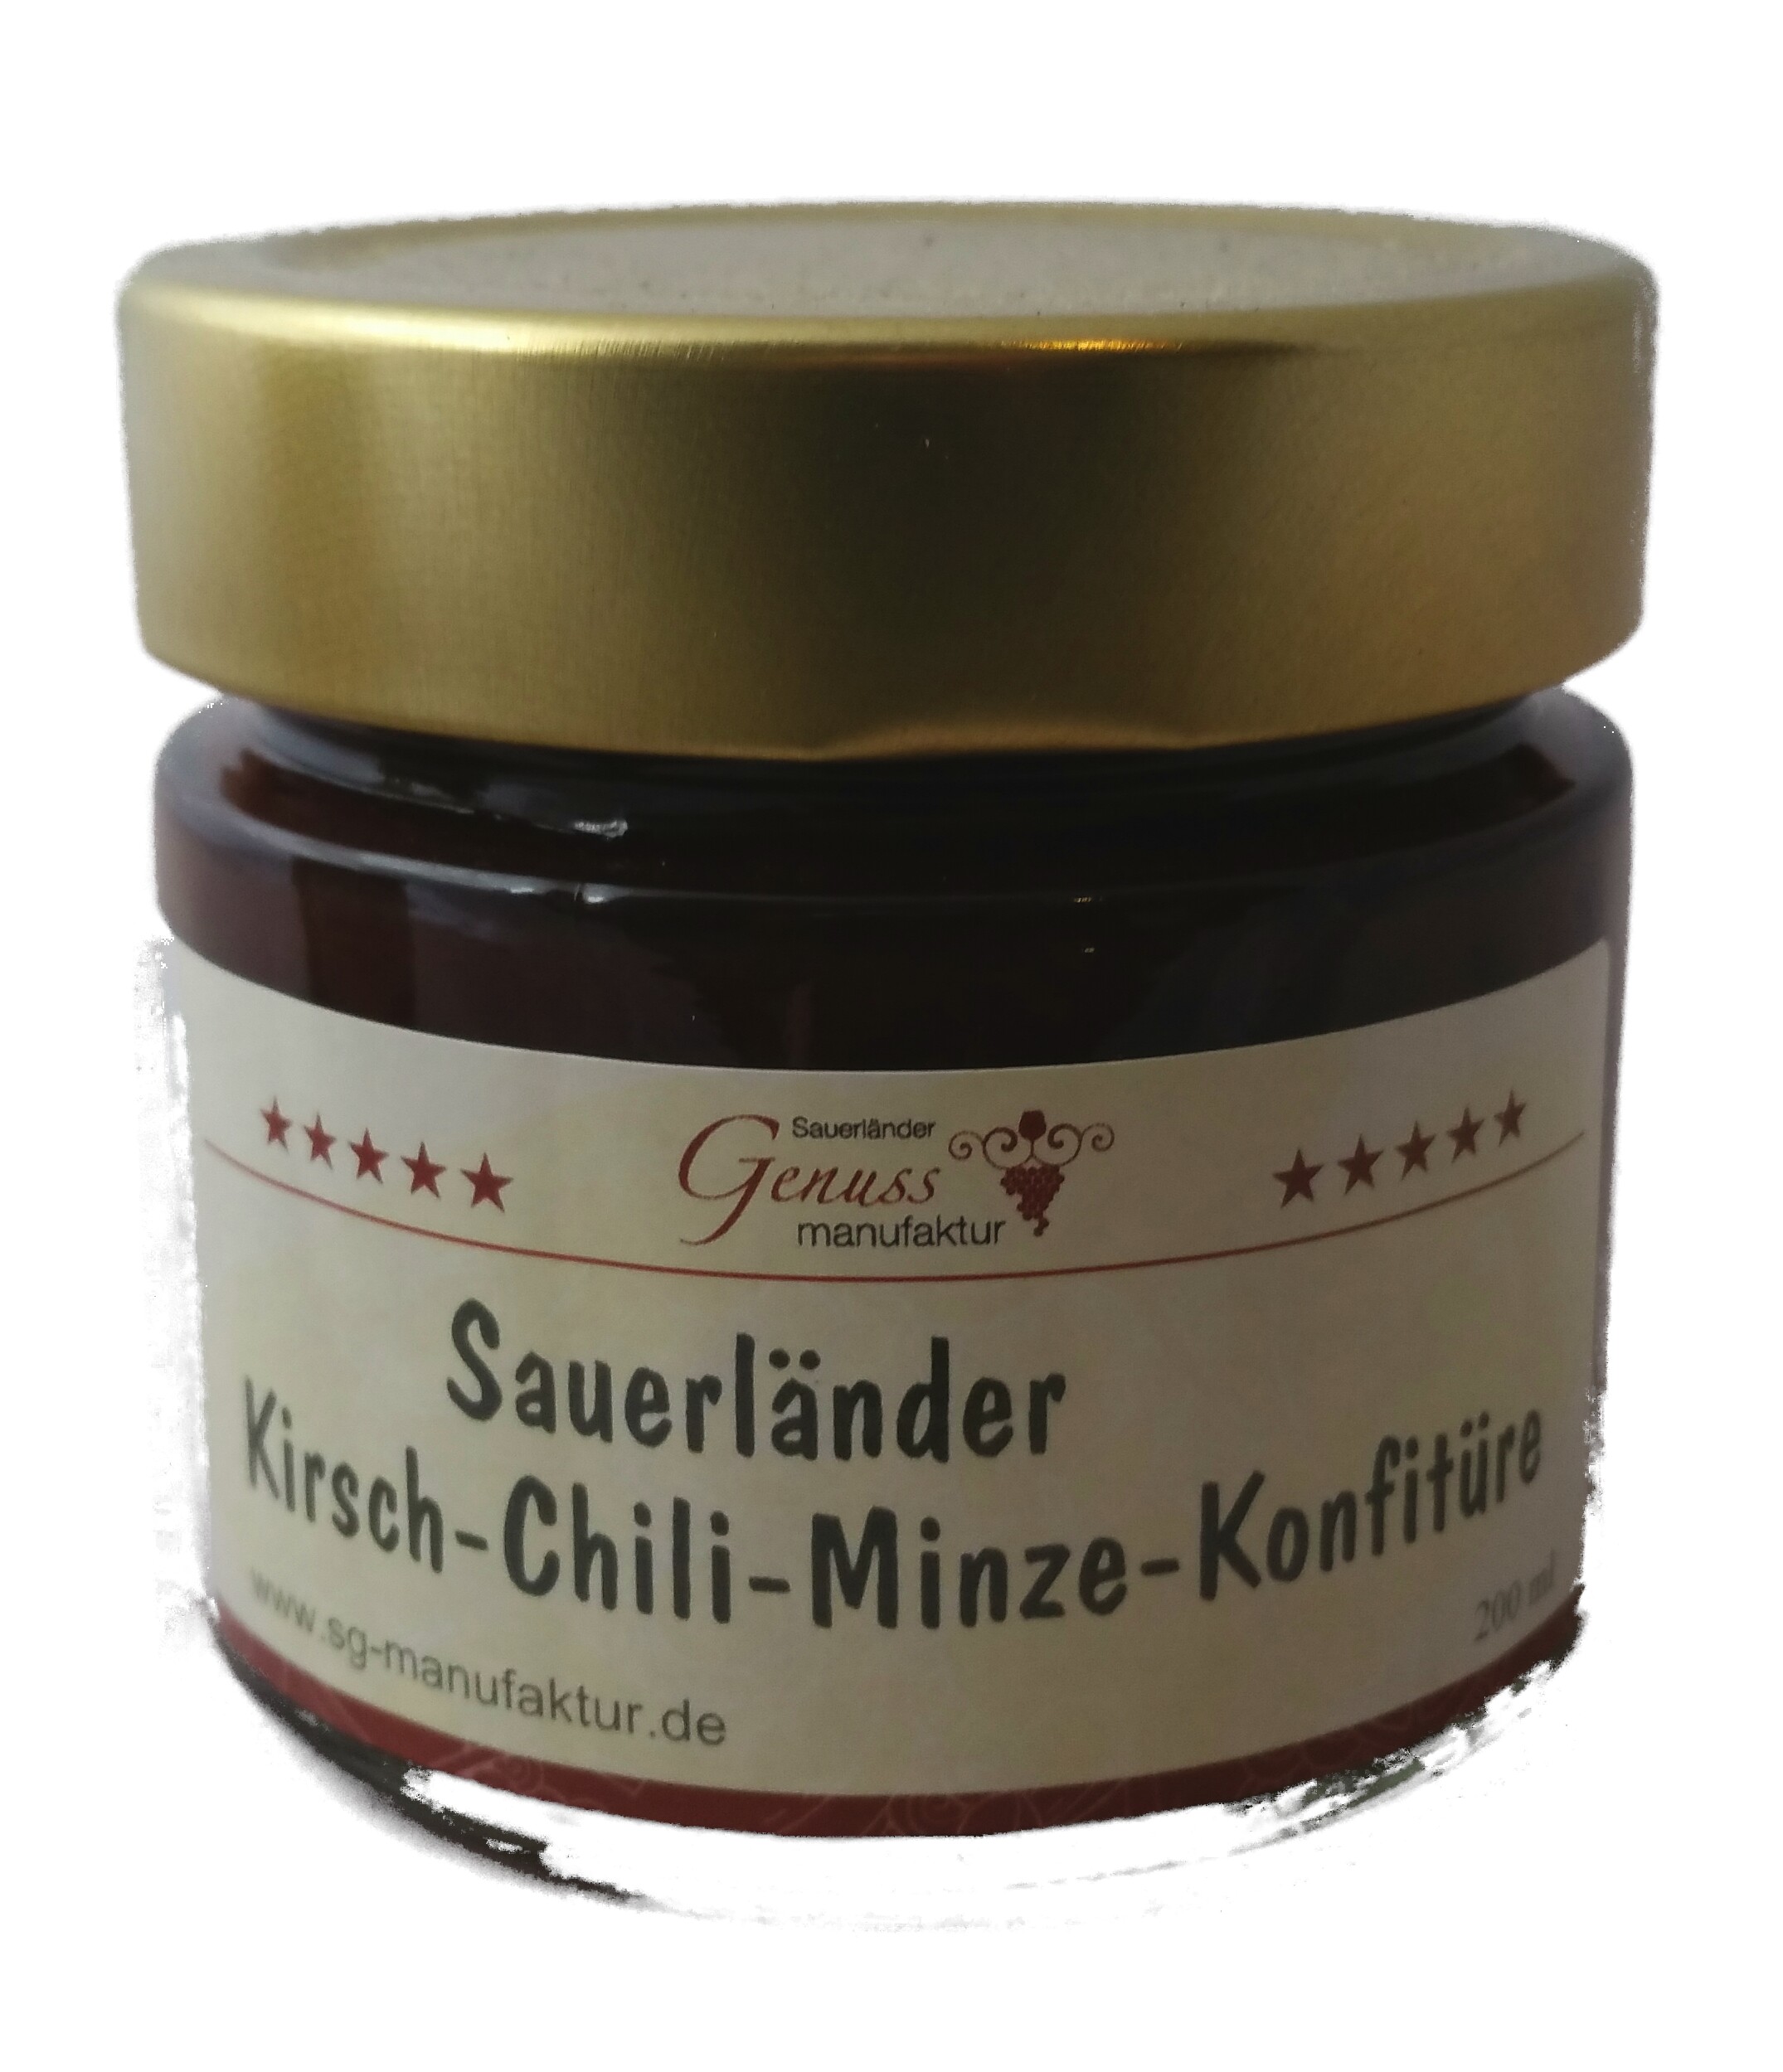 Kirsch-Chili-Minze Konfitüre 200ml | Sauerländer Genussmanufaktur ...